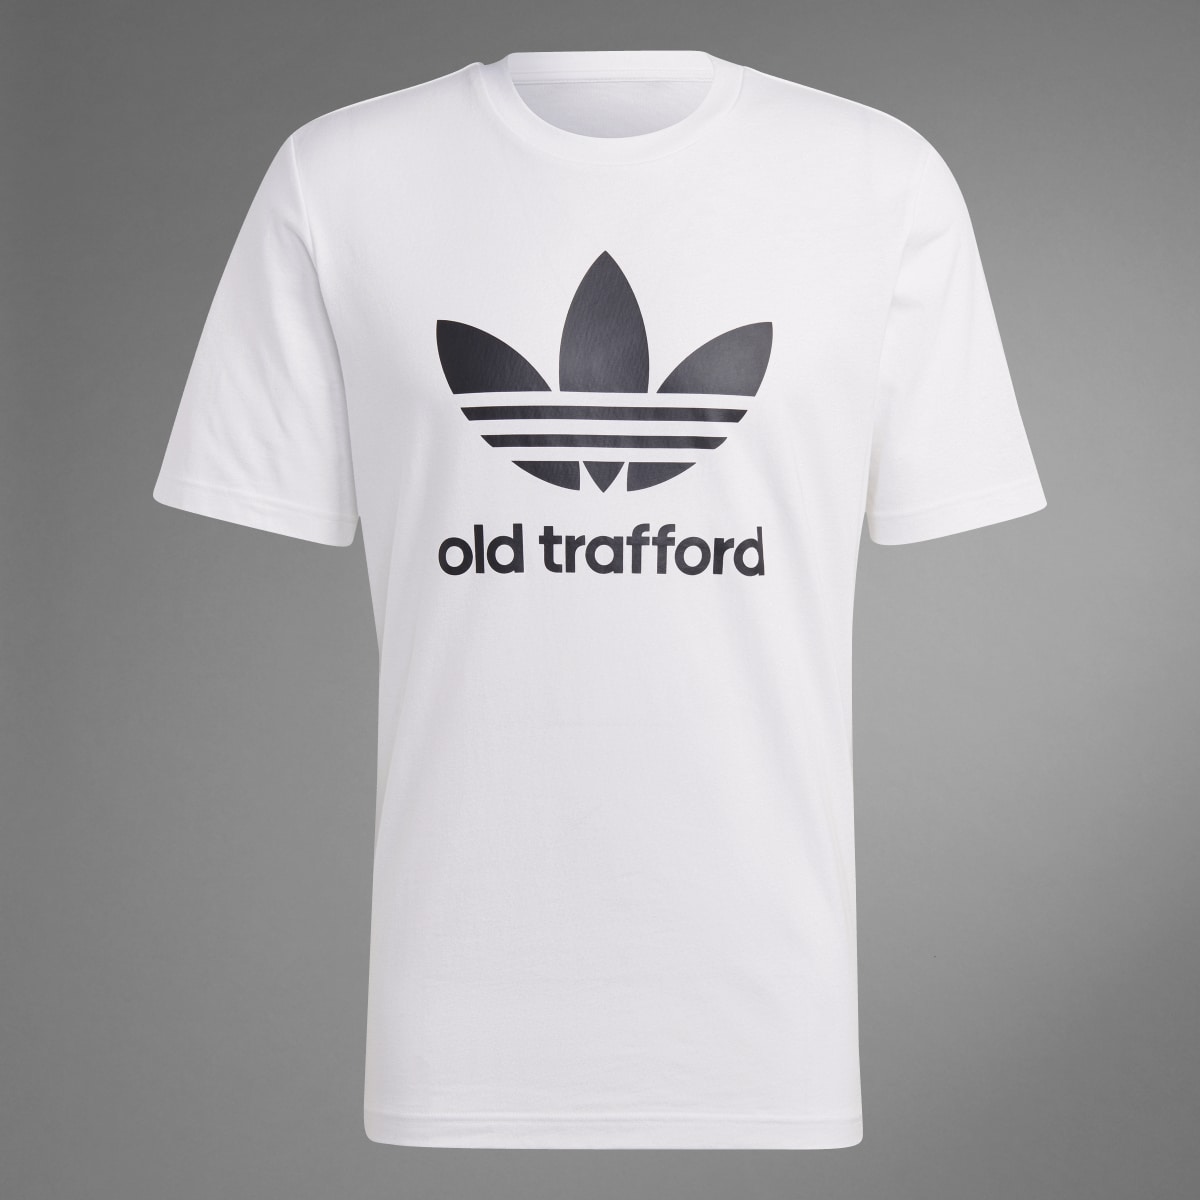 Adidas Manchester United OG Trefoil T-Shirt. 10